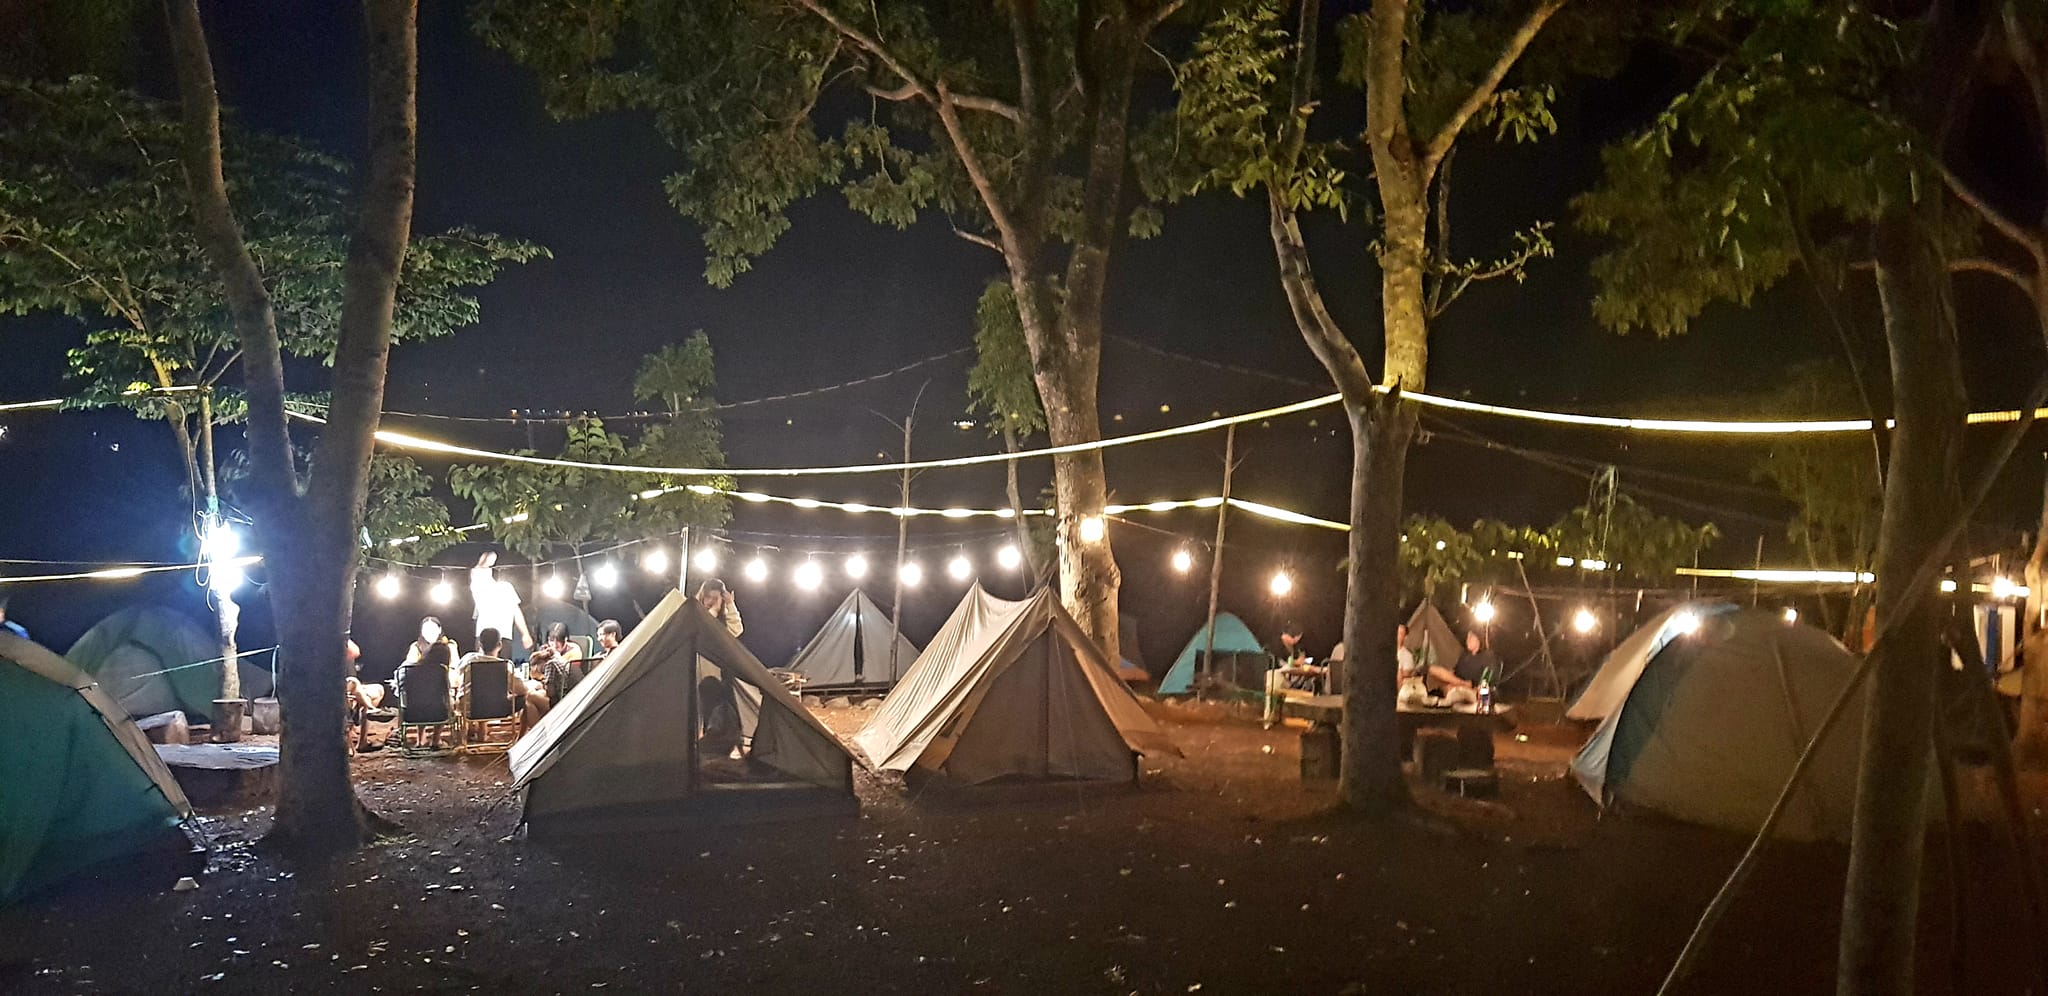 Mãđà Lakeview Camping – Khu Cắm Trại Mã Đà – Đồng Nai